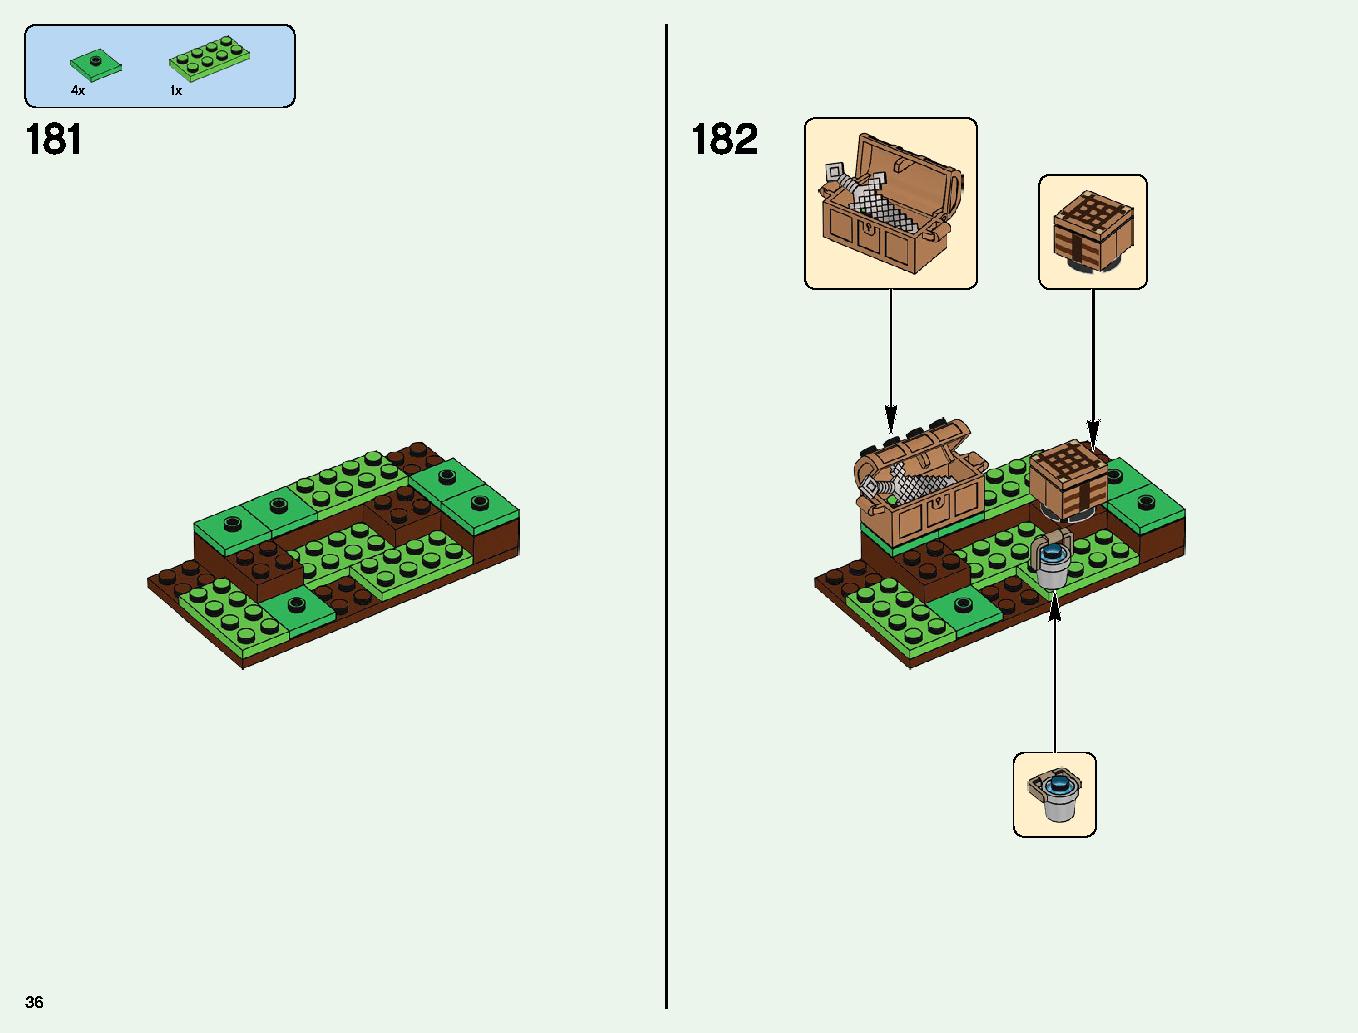 ベッドロックの冒険 21147 レゴの商品情報 レゴの説明書・組立方法 36 page